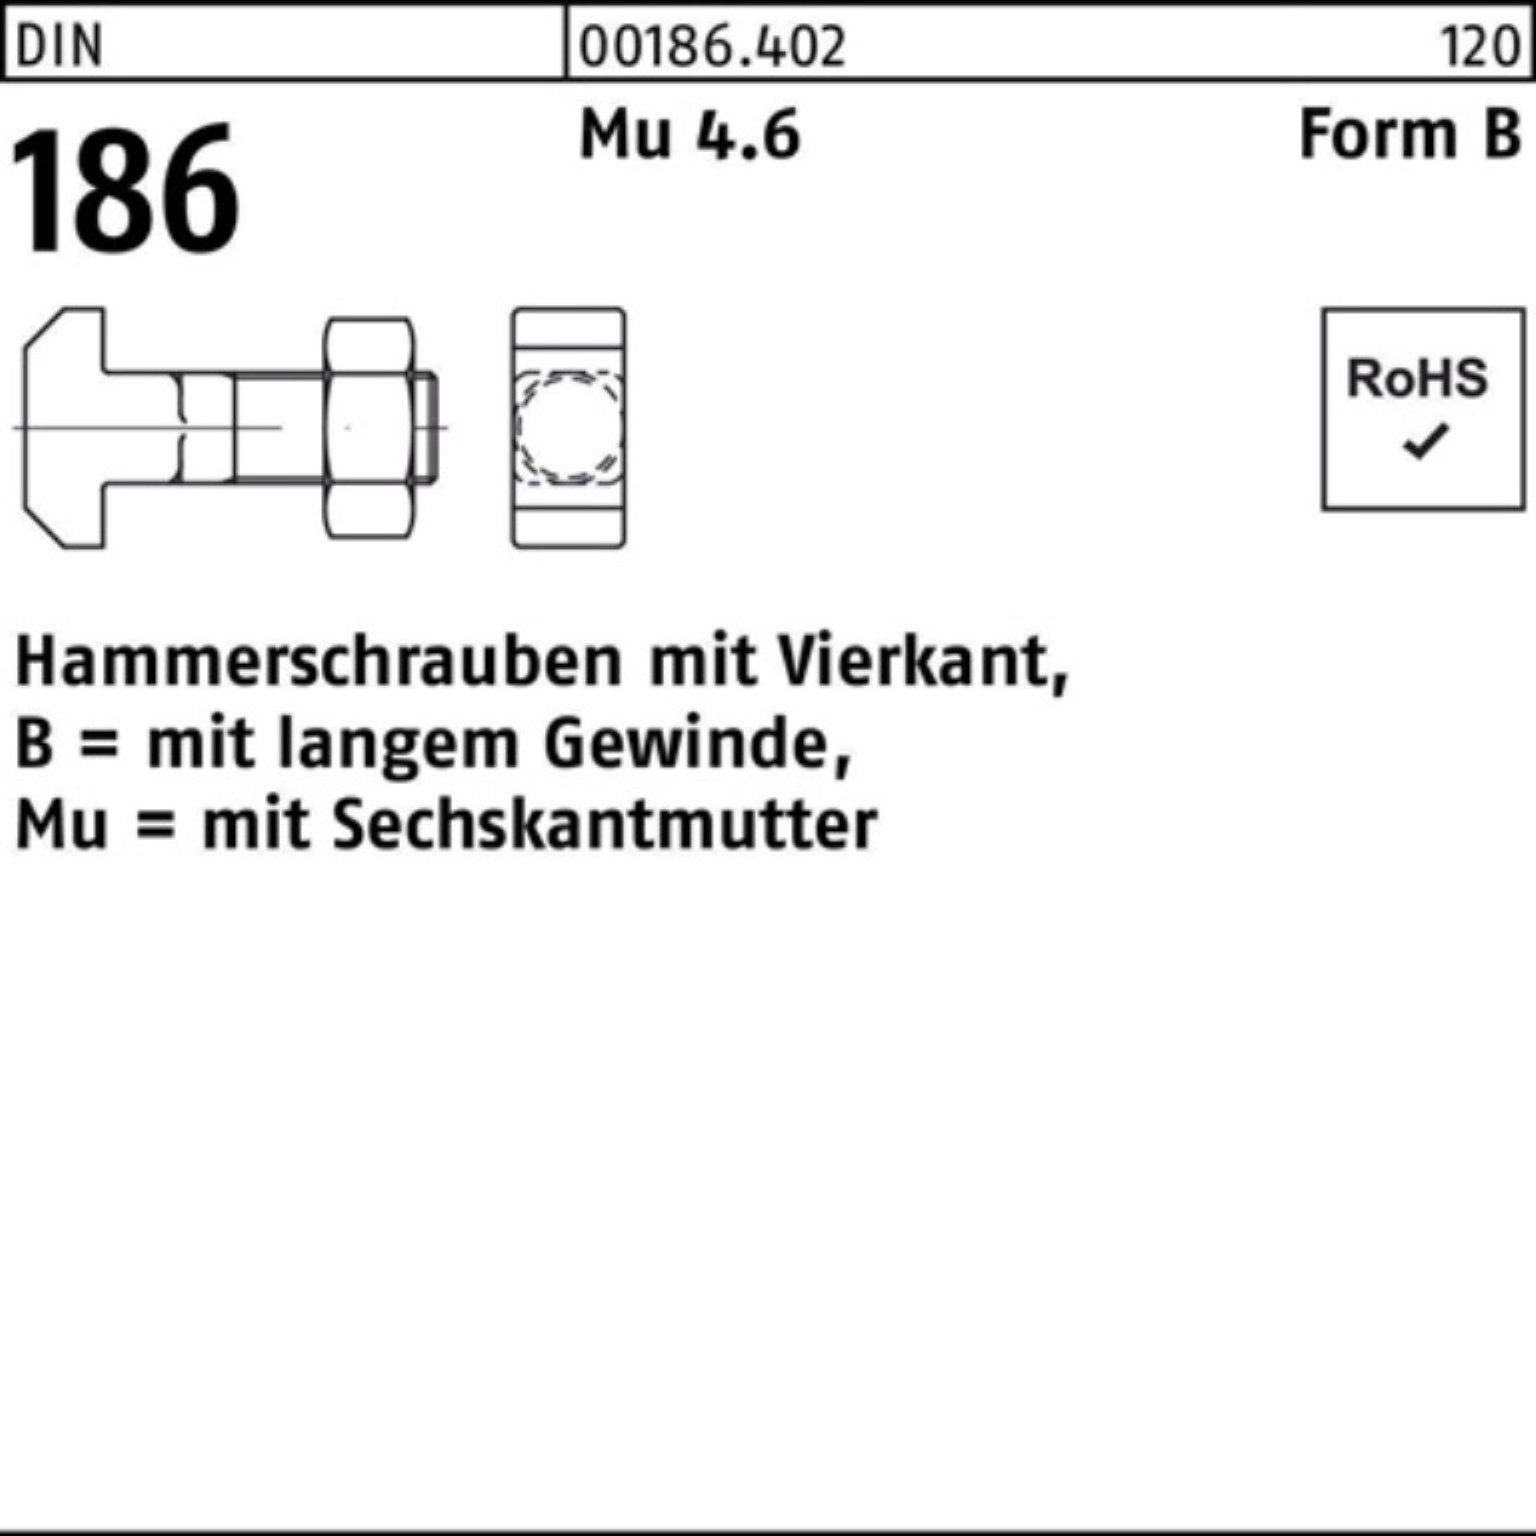 Reyher Schraube 100er Pack Hammerschraube DIN 186 FormB Vierkant 6-ktmutter BM 24x 70